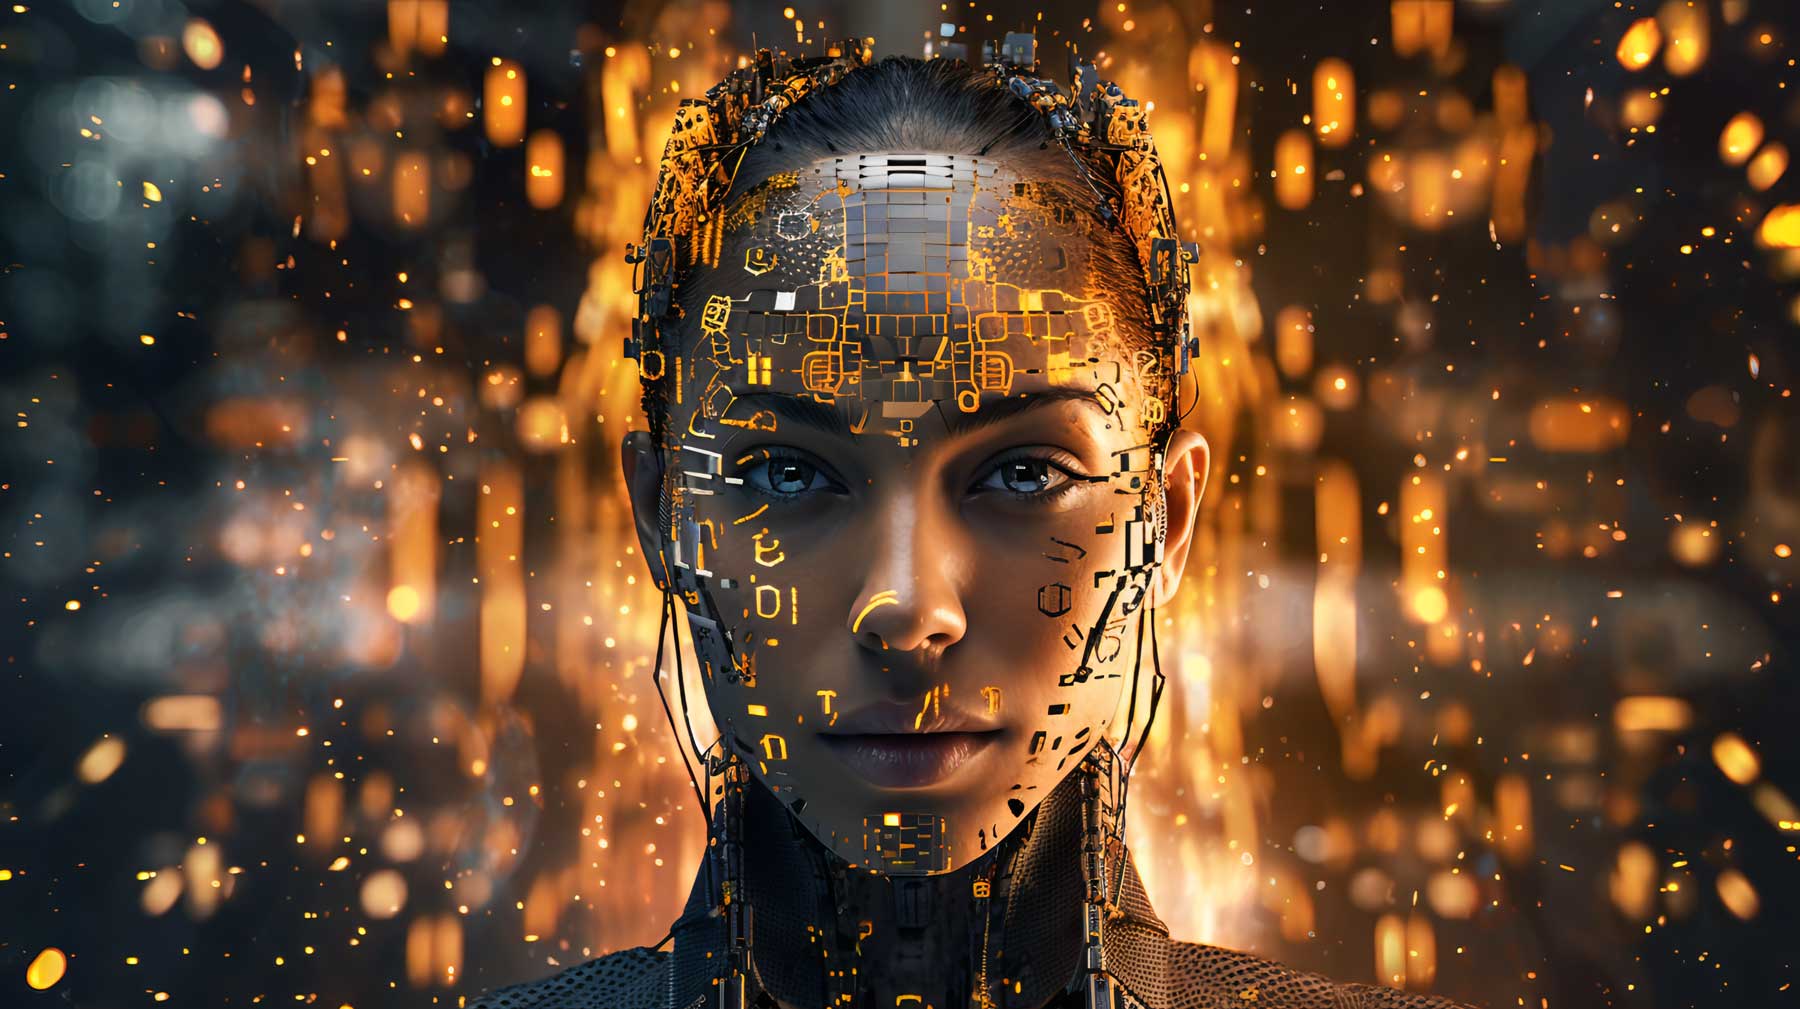 图片展示了一位女性机器人的头部特写，其面部一半呈现出金属电路板，另一半则保留人类特征，背景有光点闪烁。